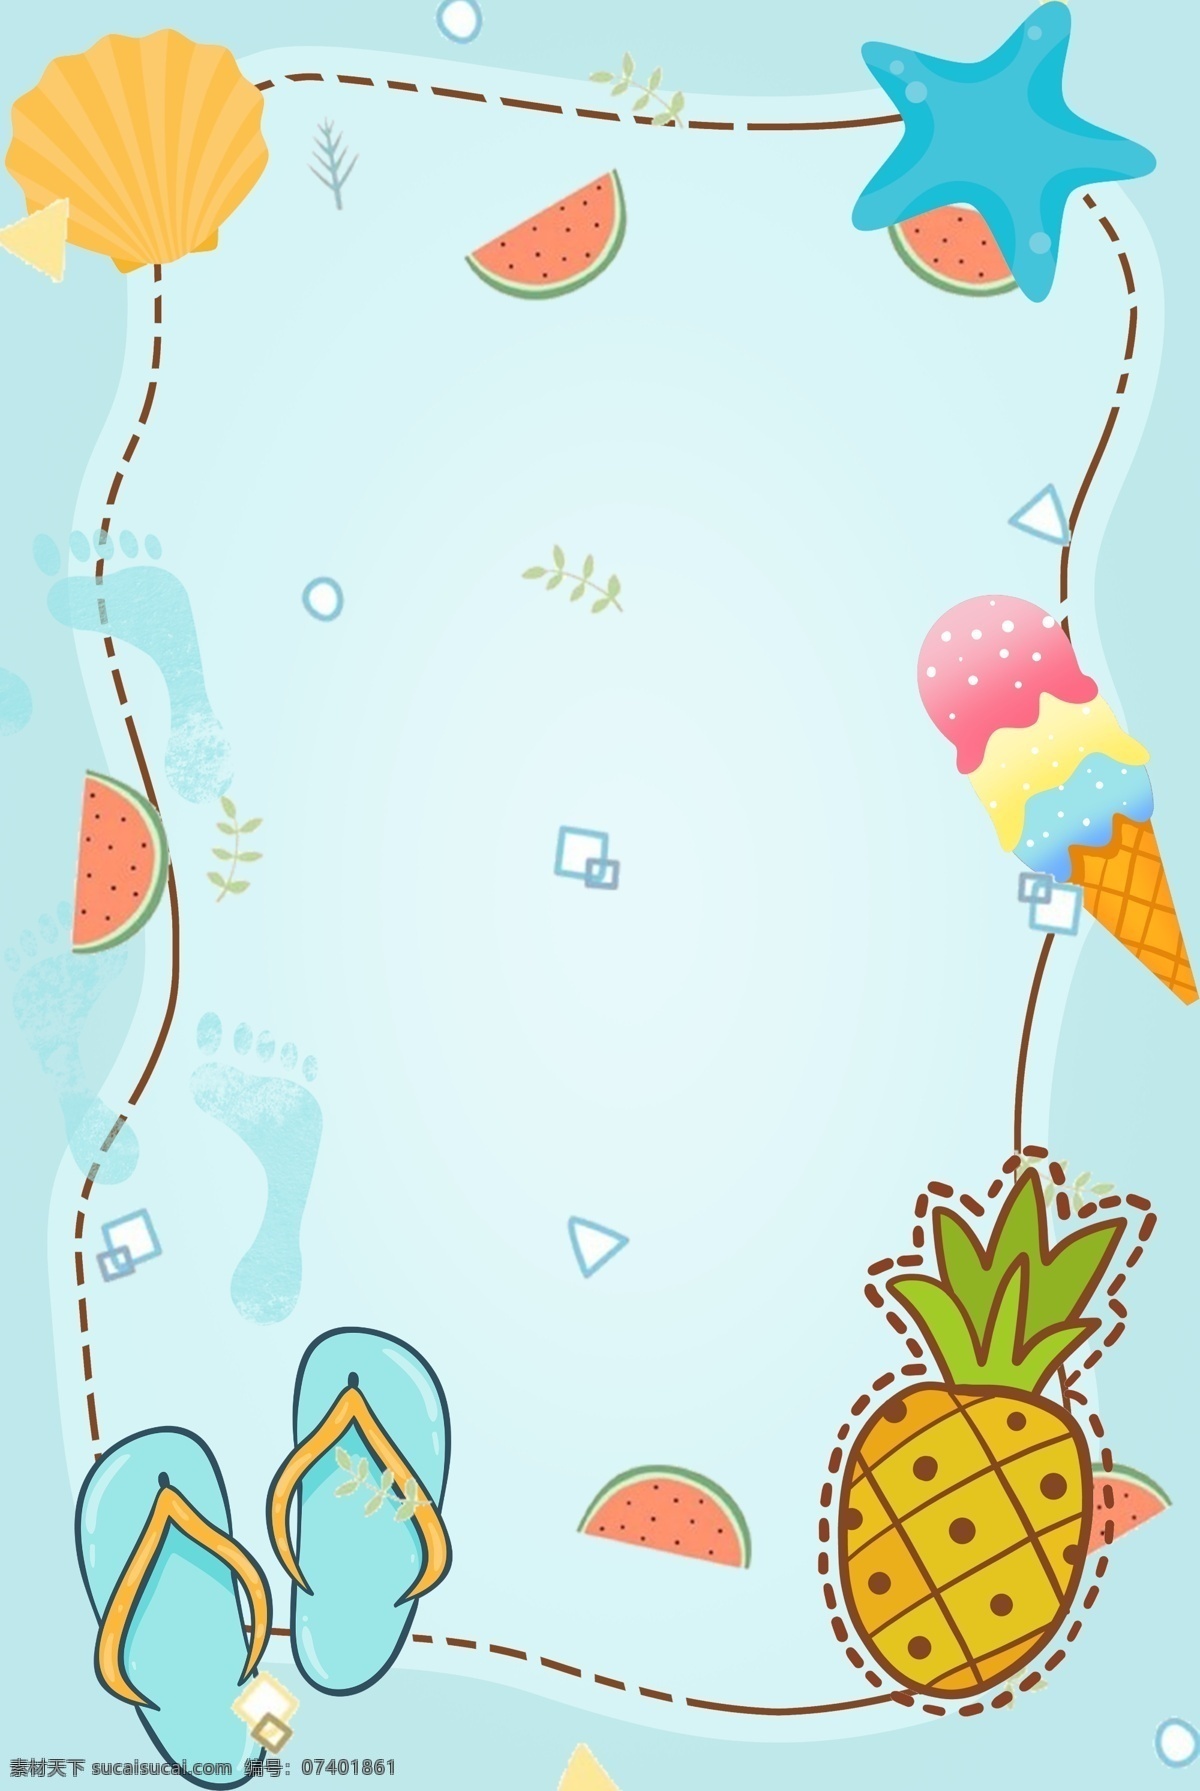 夏季 卡通 水果 沙滩 旅游 背景 旅游背景 海星 蓝色背景 清凉夏季 夏天 冰淇淋